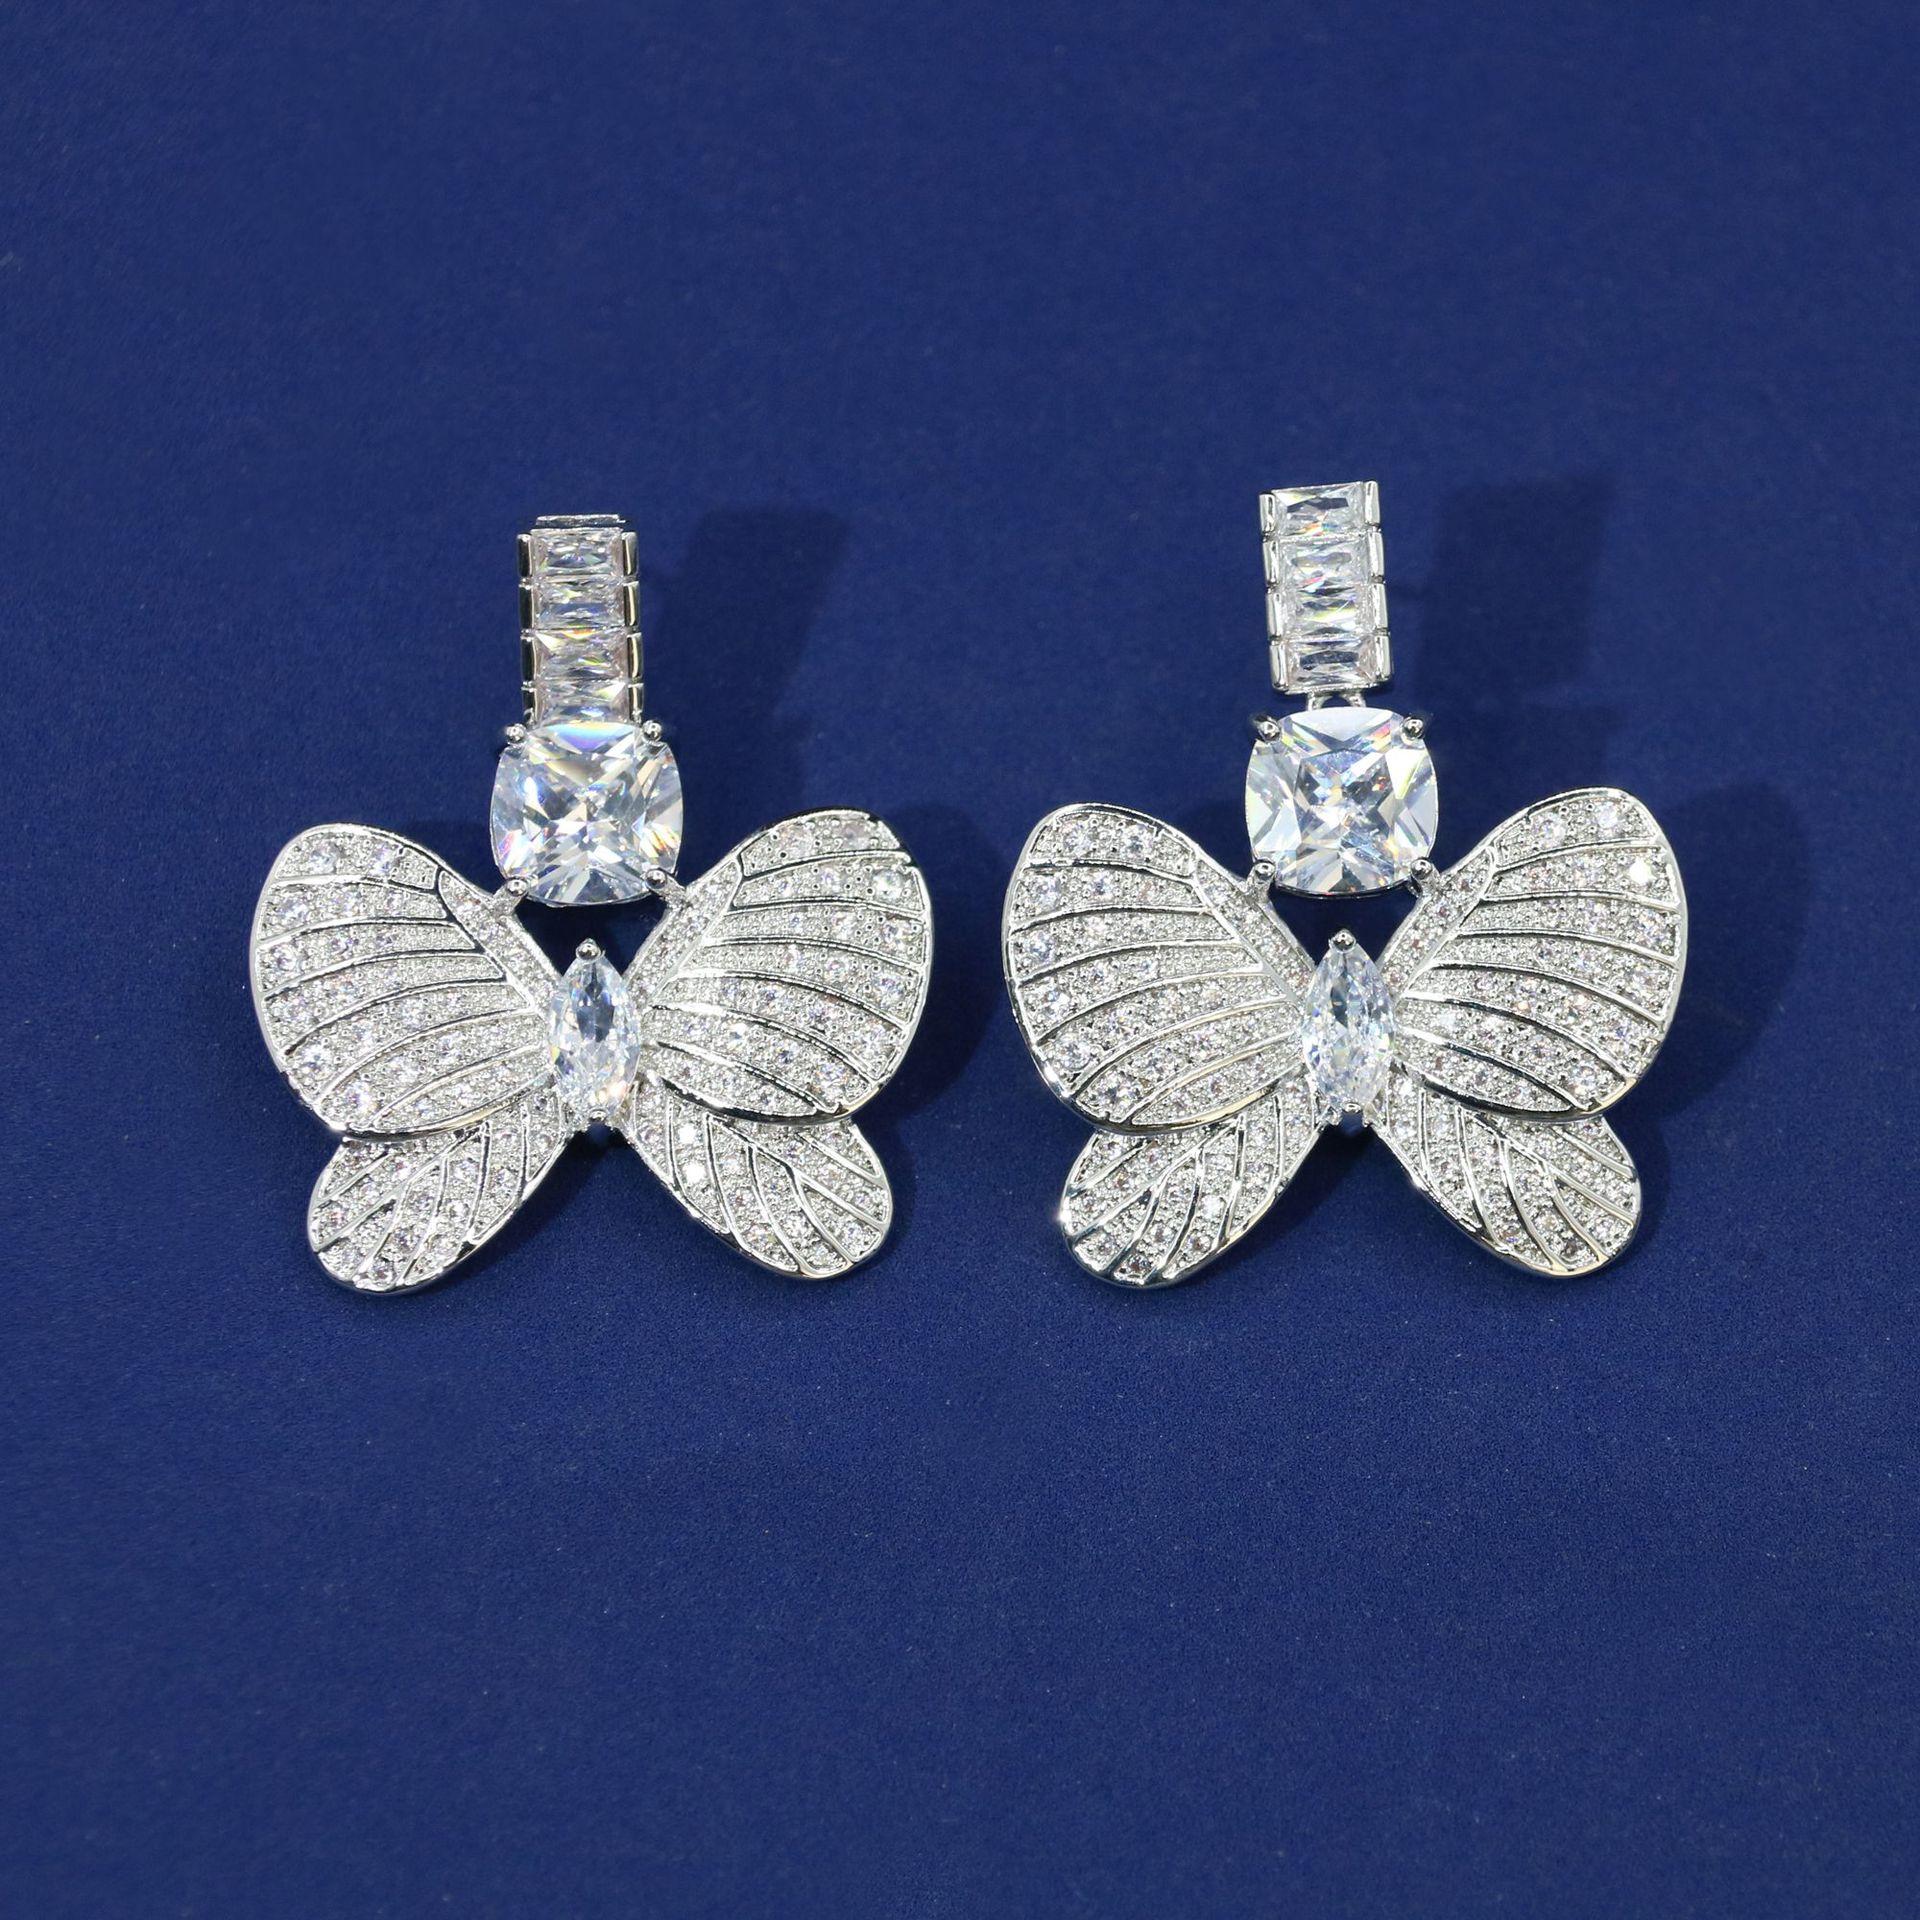 1:White zirconium earrings on white background